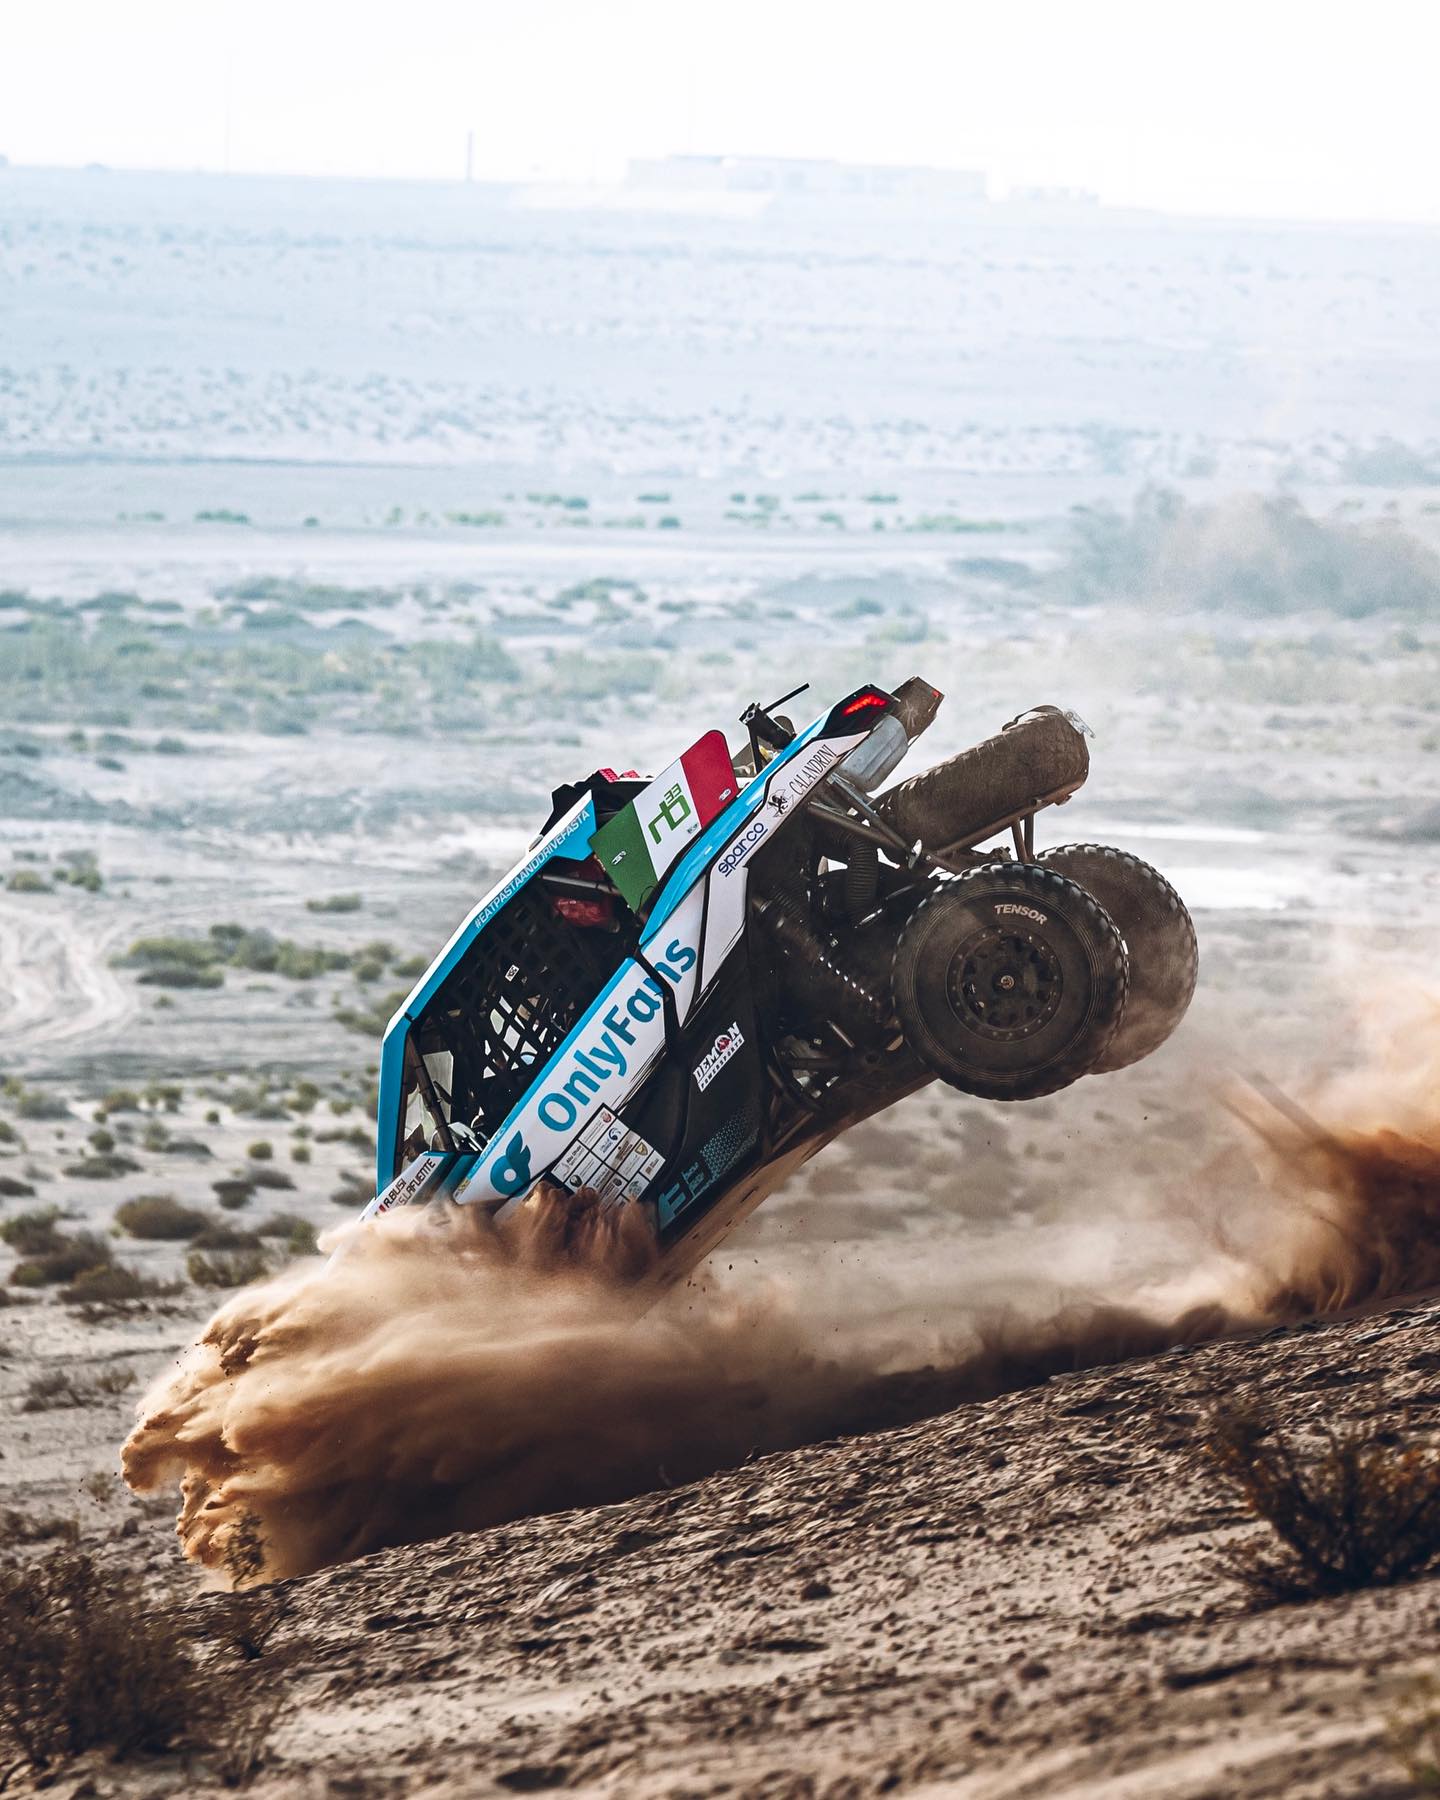 I smell race airrrrr 🔥🇨🇱

#rally #rallylife #crosscountry #desert